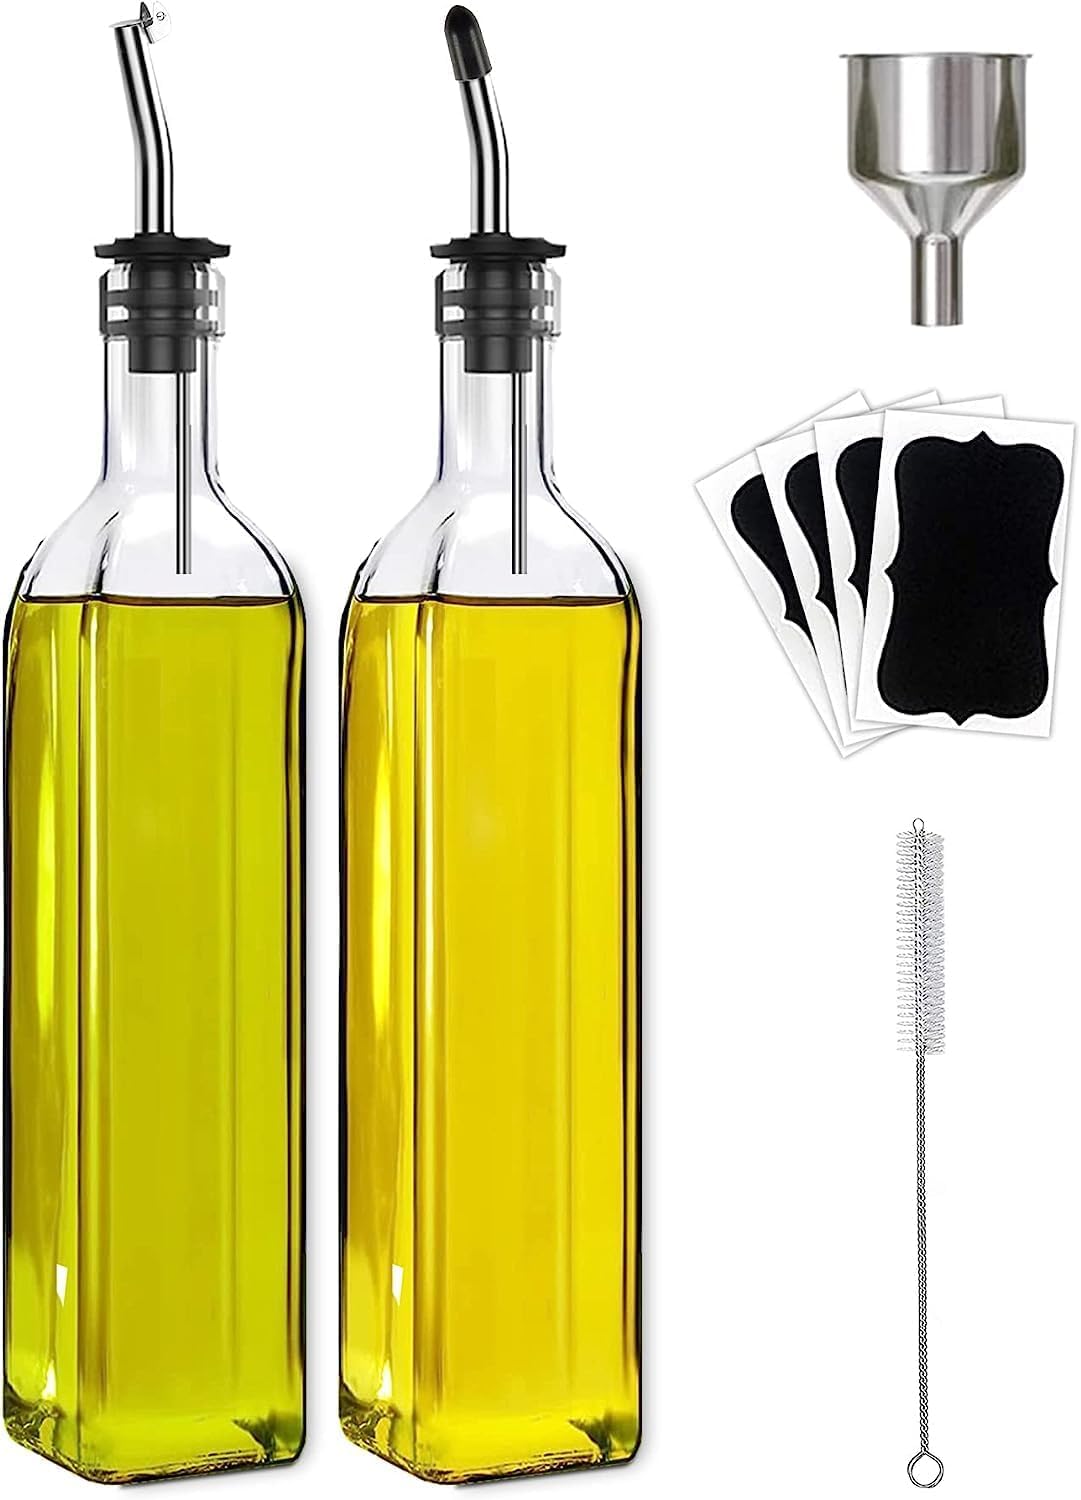 Kitchen Oil Dispenser WholeSale - Price List, Bulk Buy at